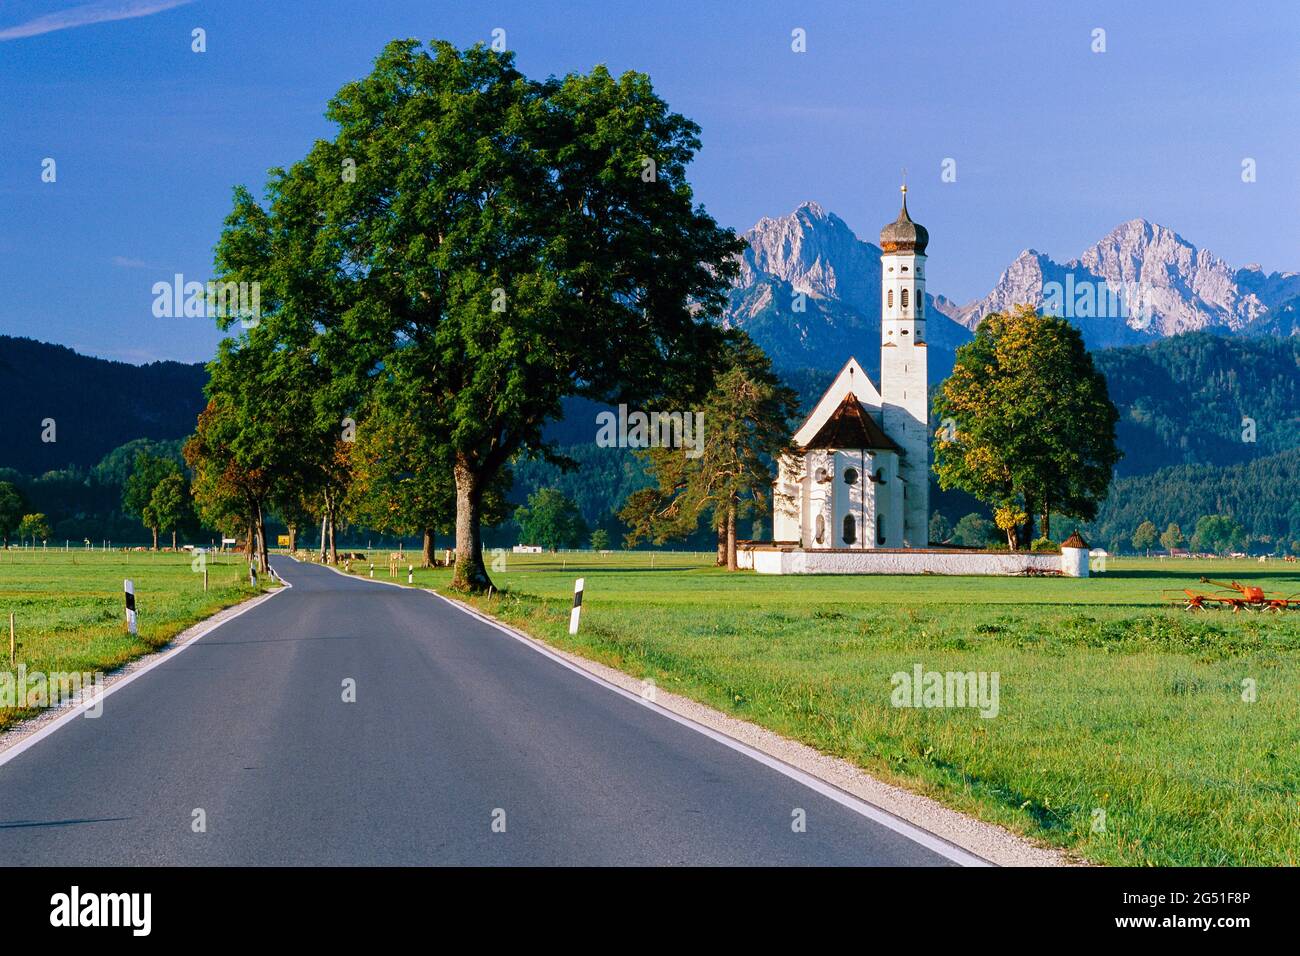 Paysage avec route et église, Allemagne Banque D'Images